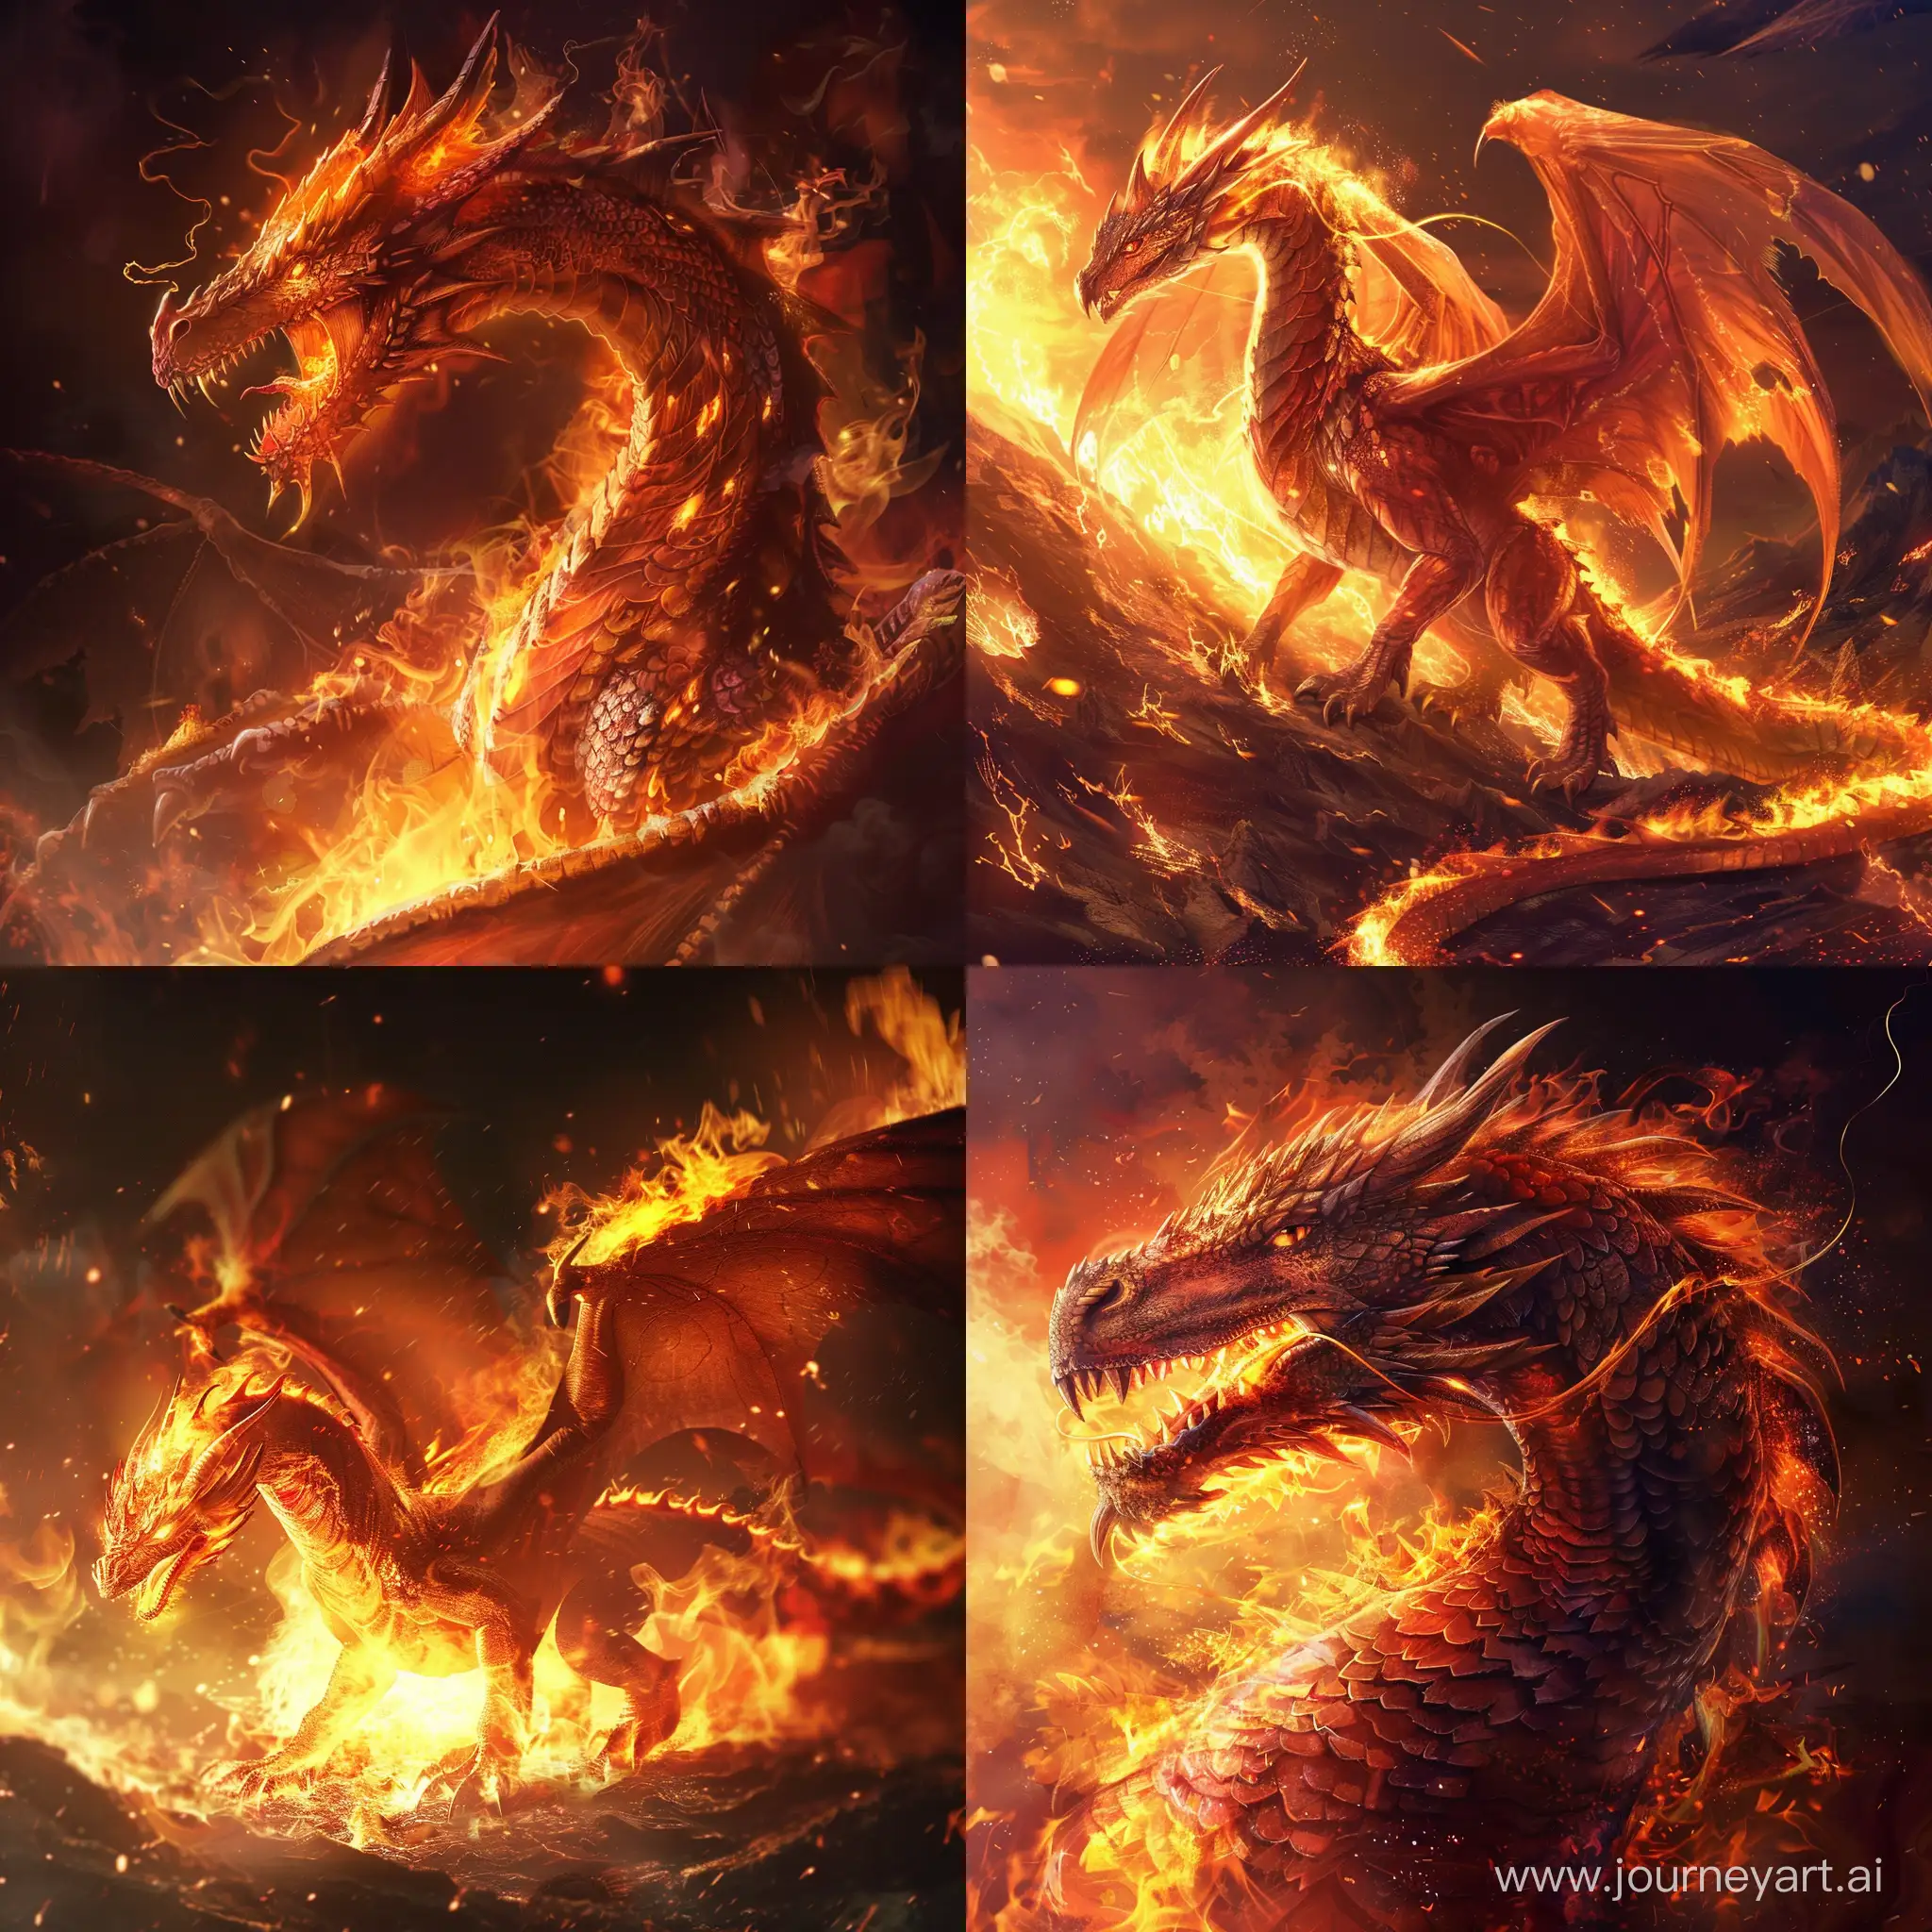 Majestic-Fire-Dragon-in-a-Vibrant-Fantasy-Landscape